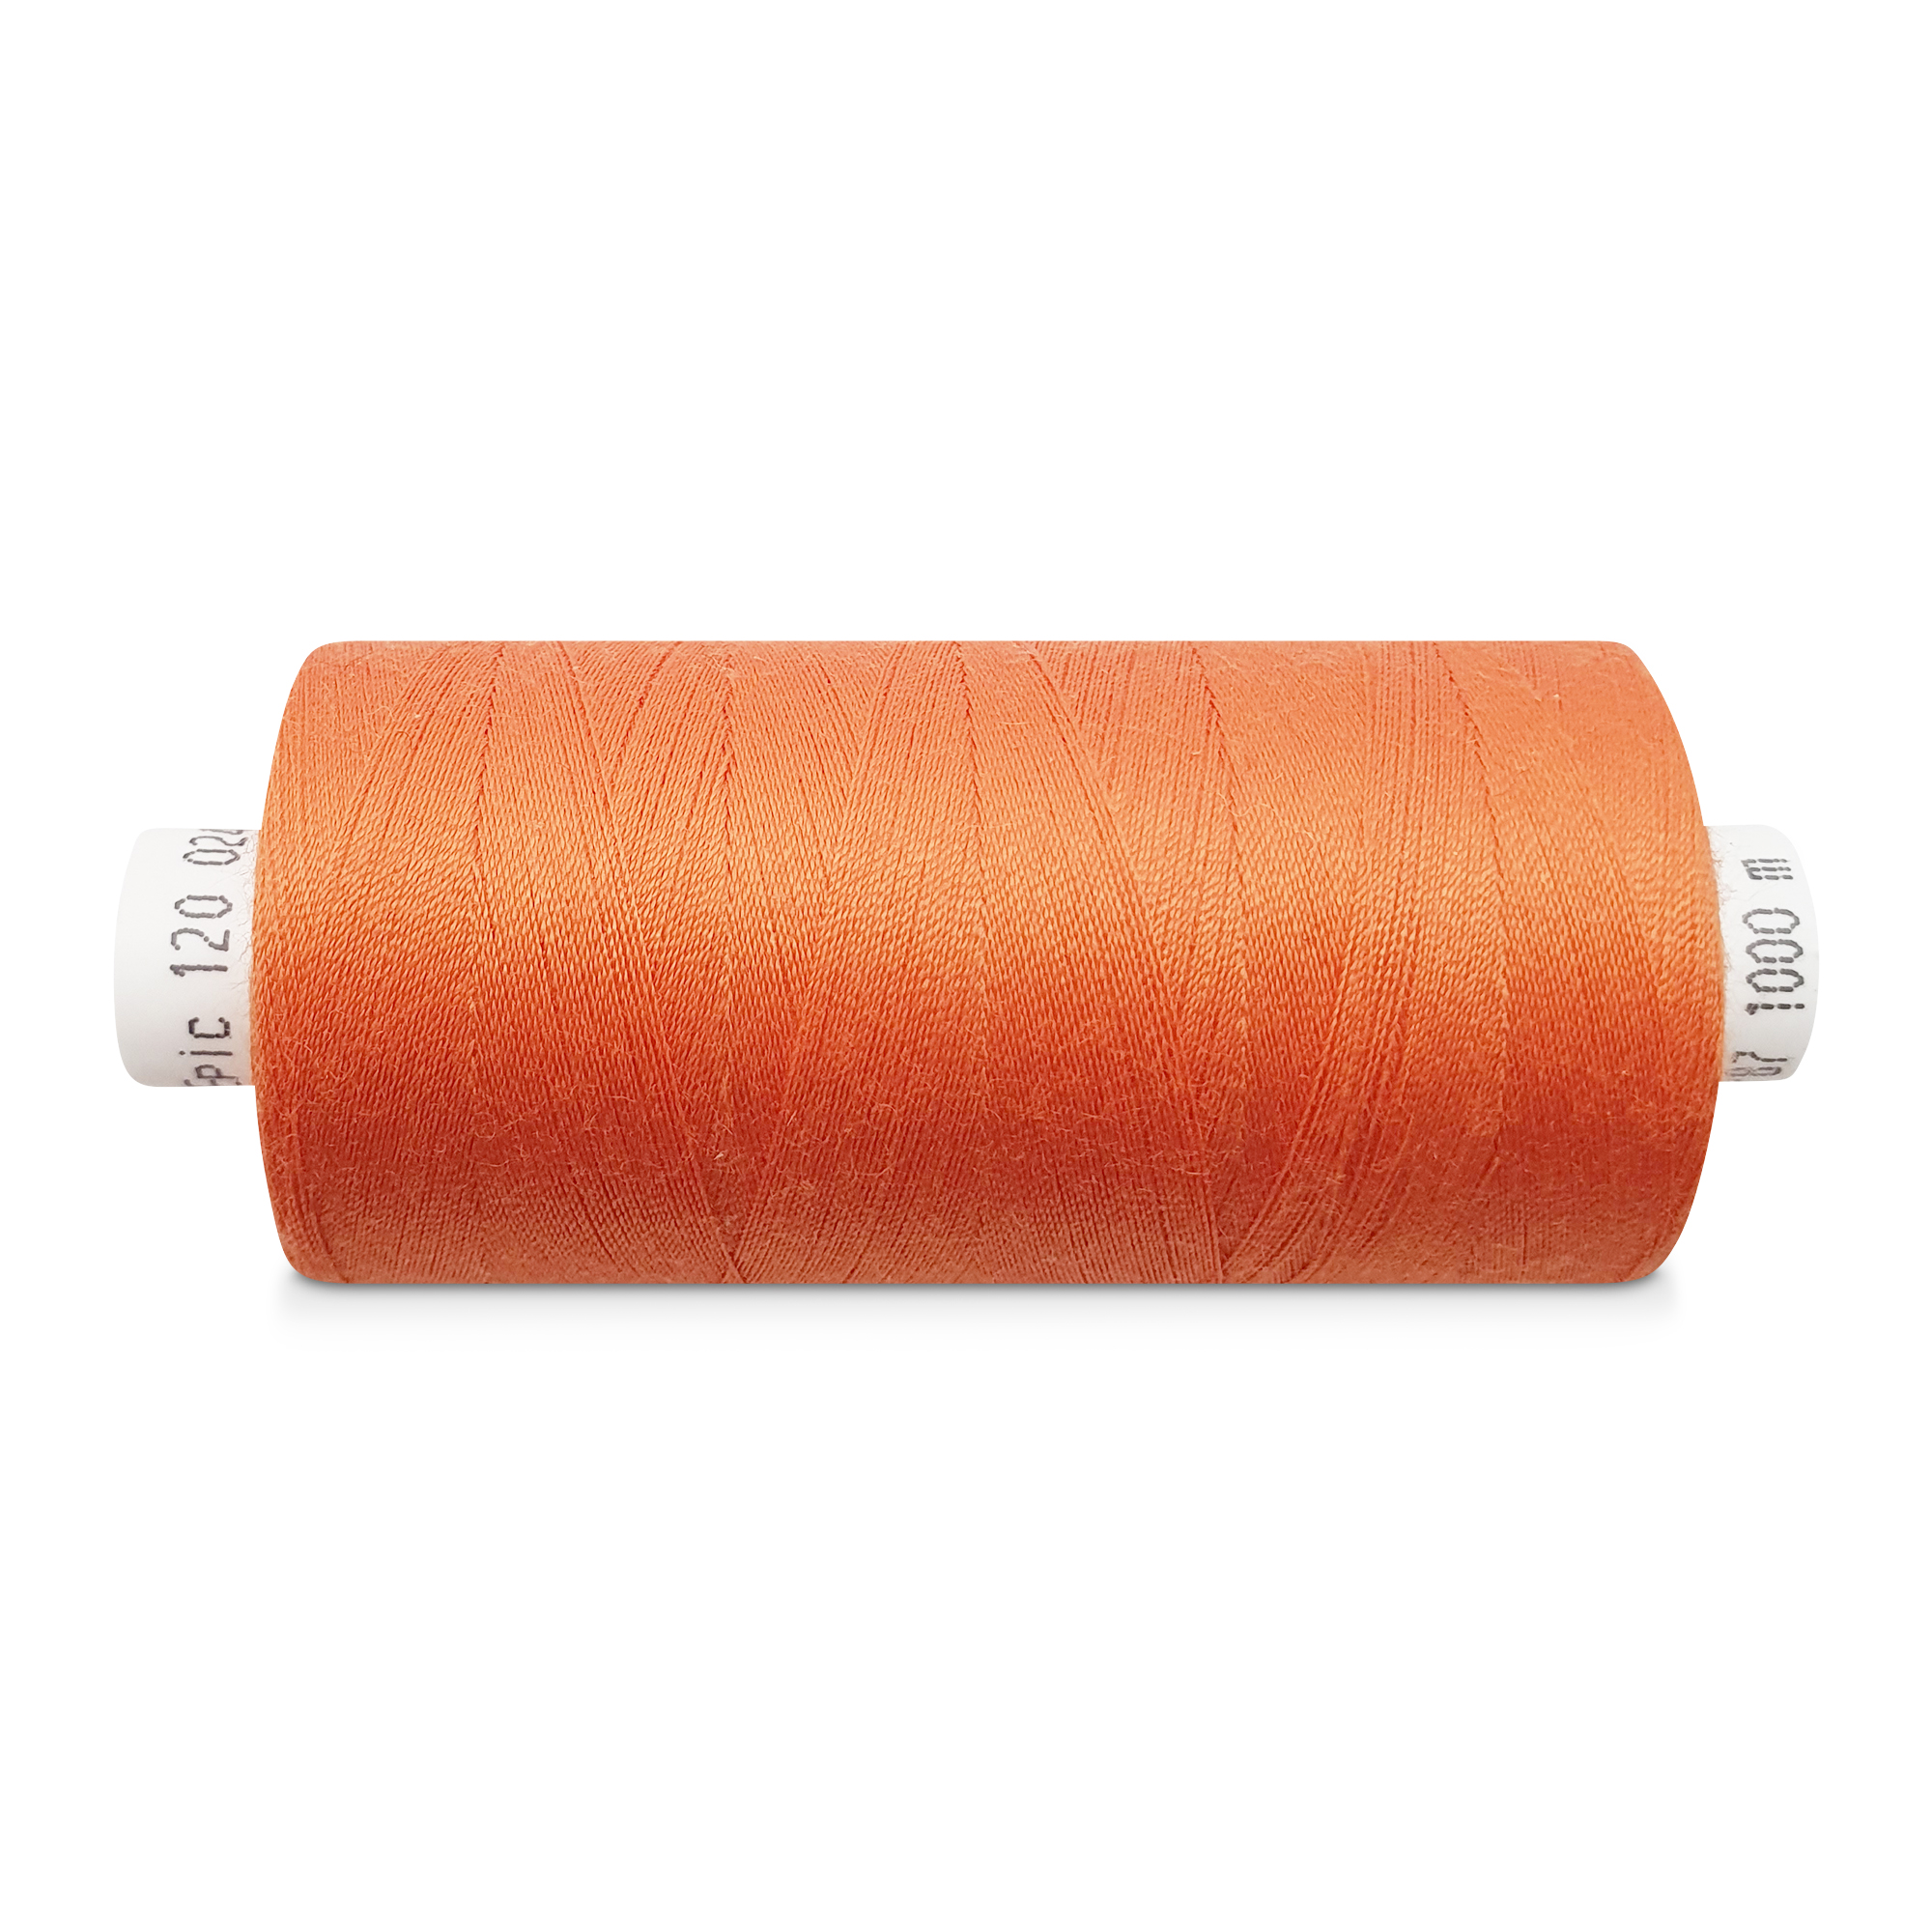 Jeansgarn feuerdorn (rot-orange), 500m, No 50, Markengarn Epic/Coats, Polyester